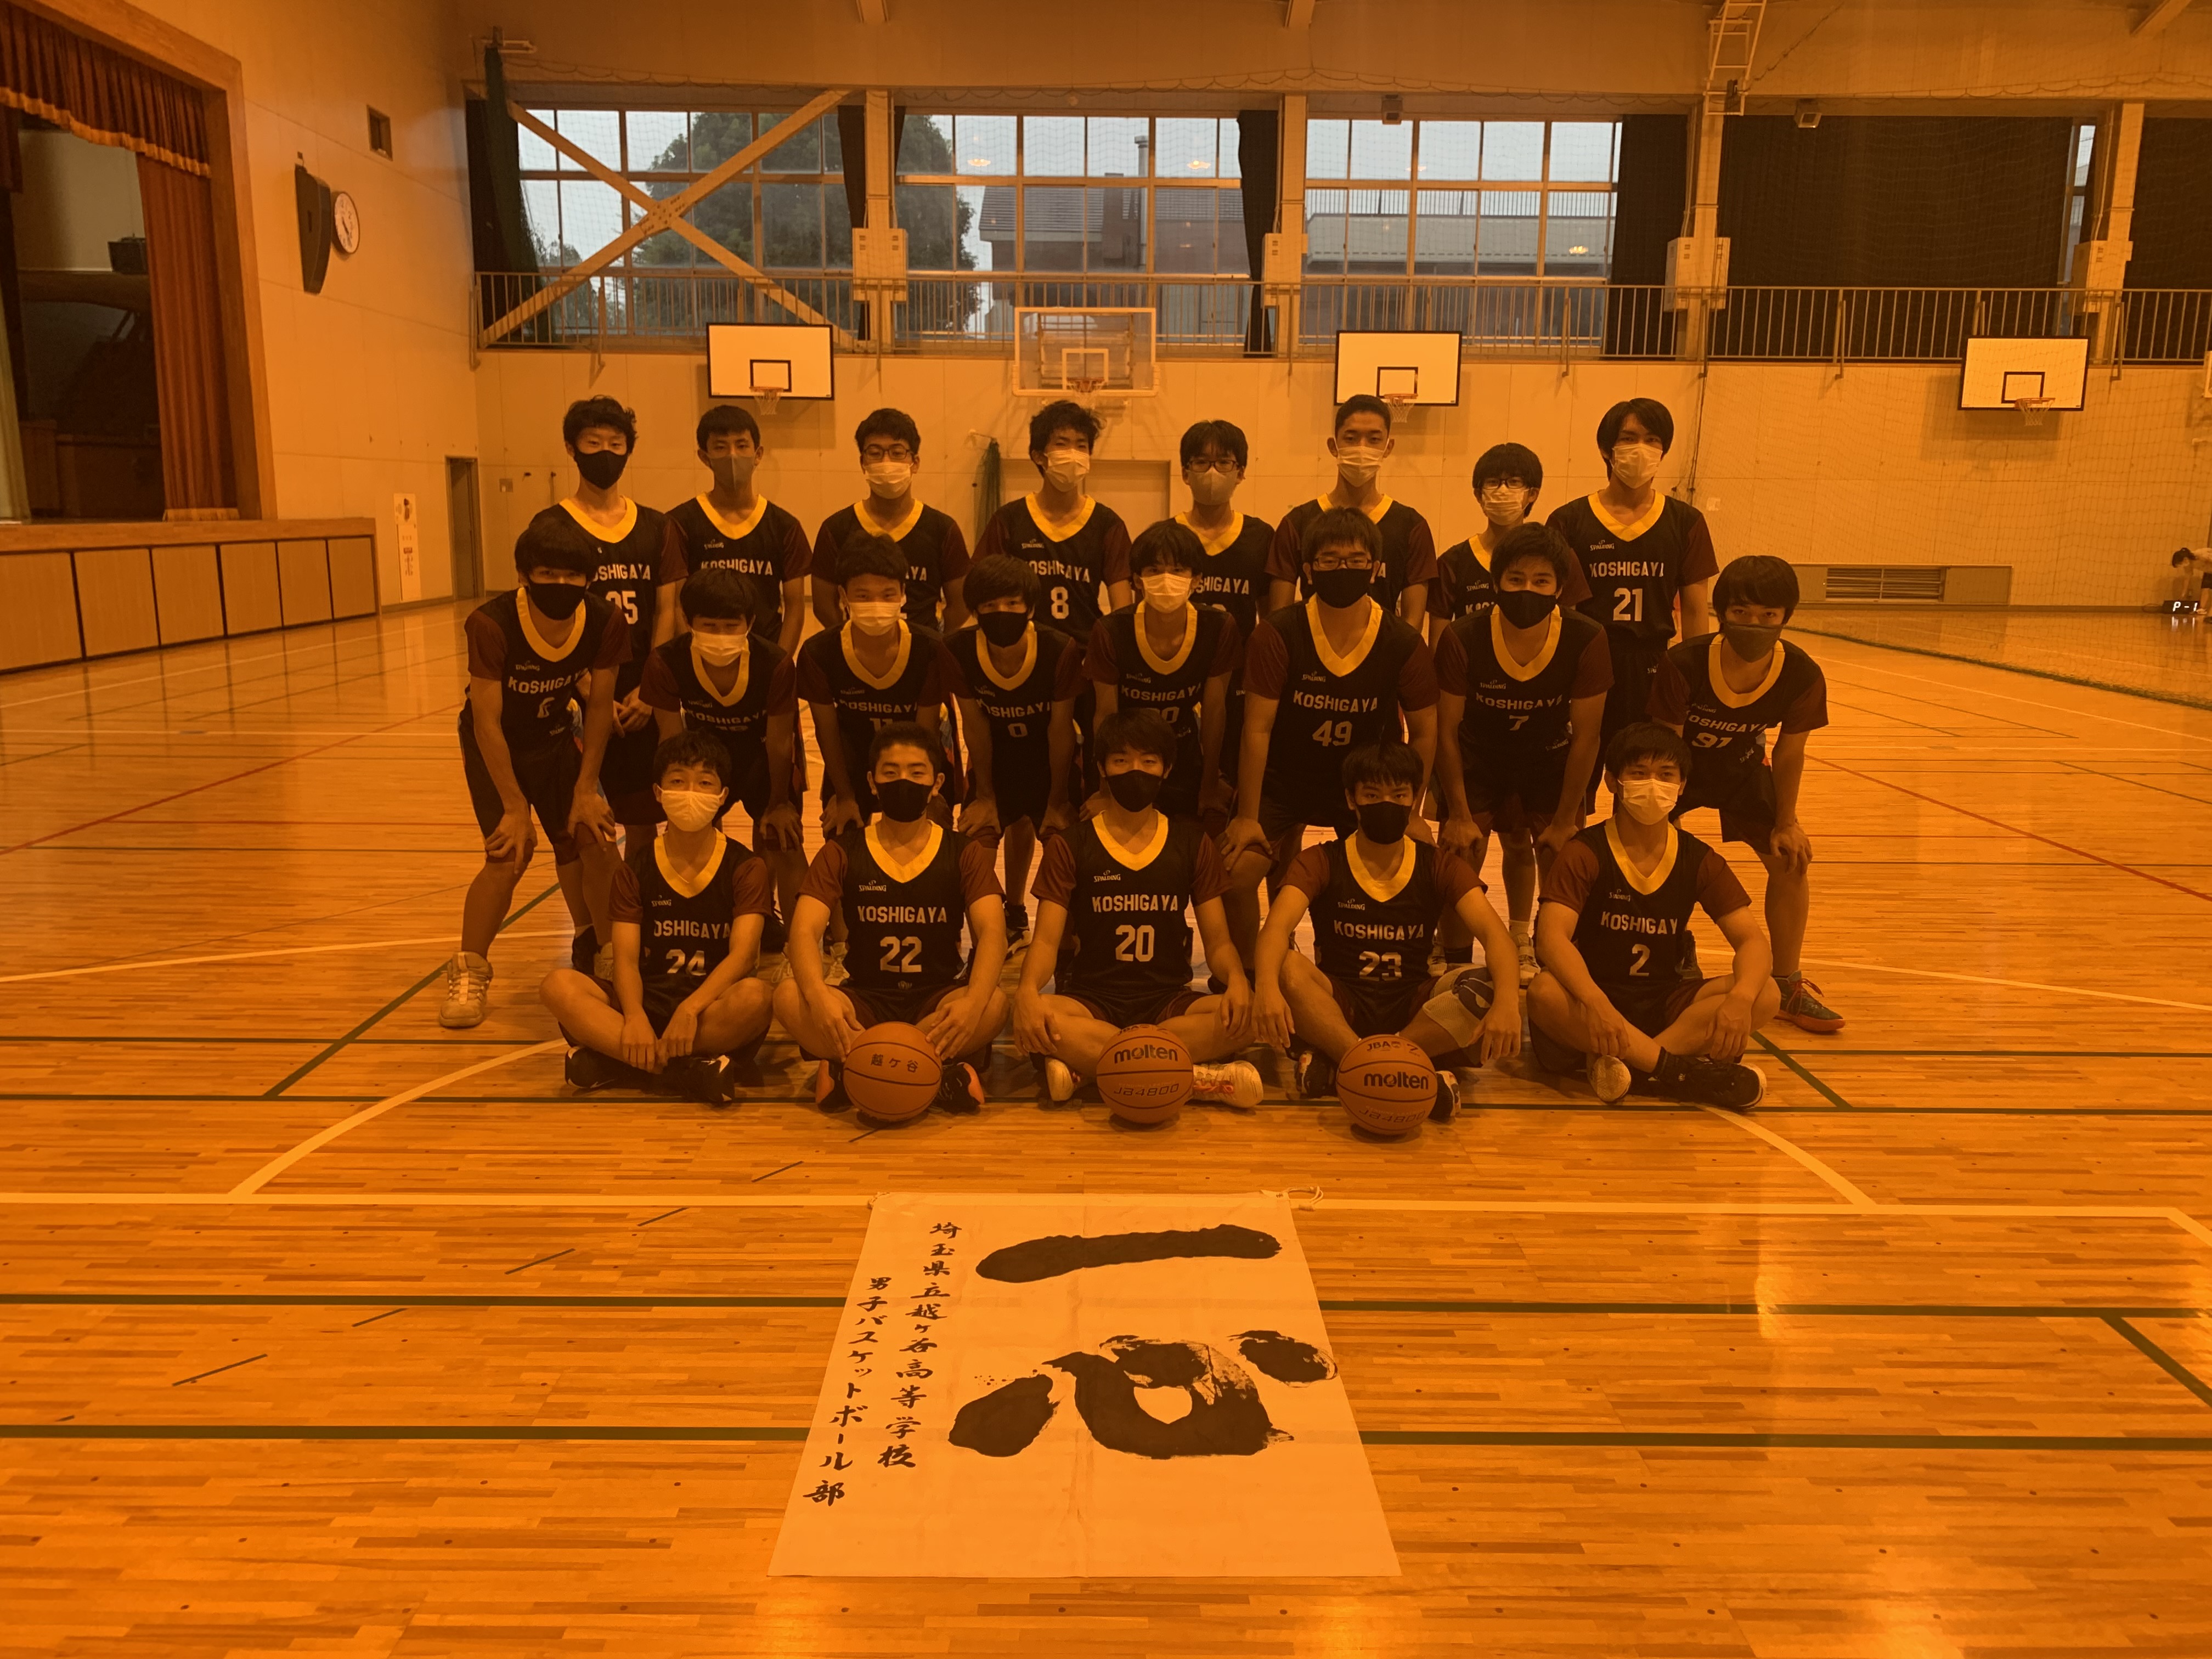 ５５かっこいいバスケユニフォーム２ 世界初 株式会社shootingstars 埼玉県上尾市のバスケットボールプロショップ